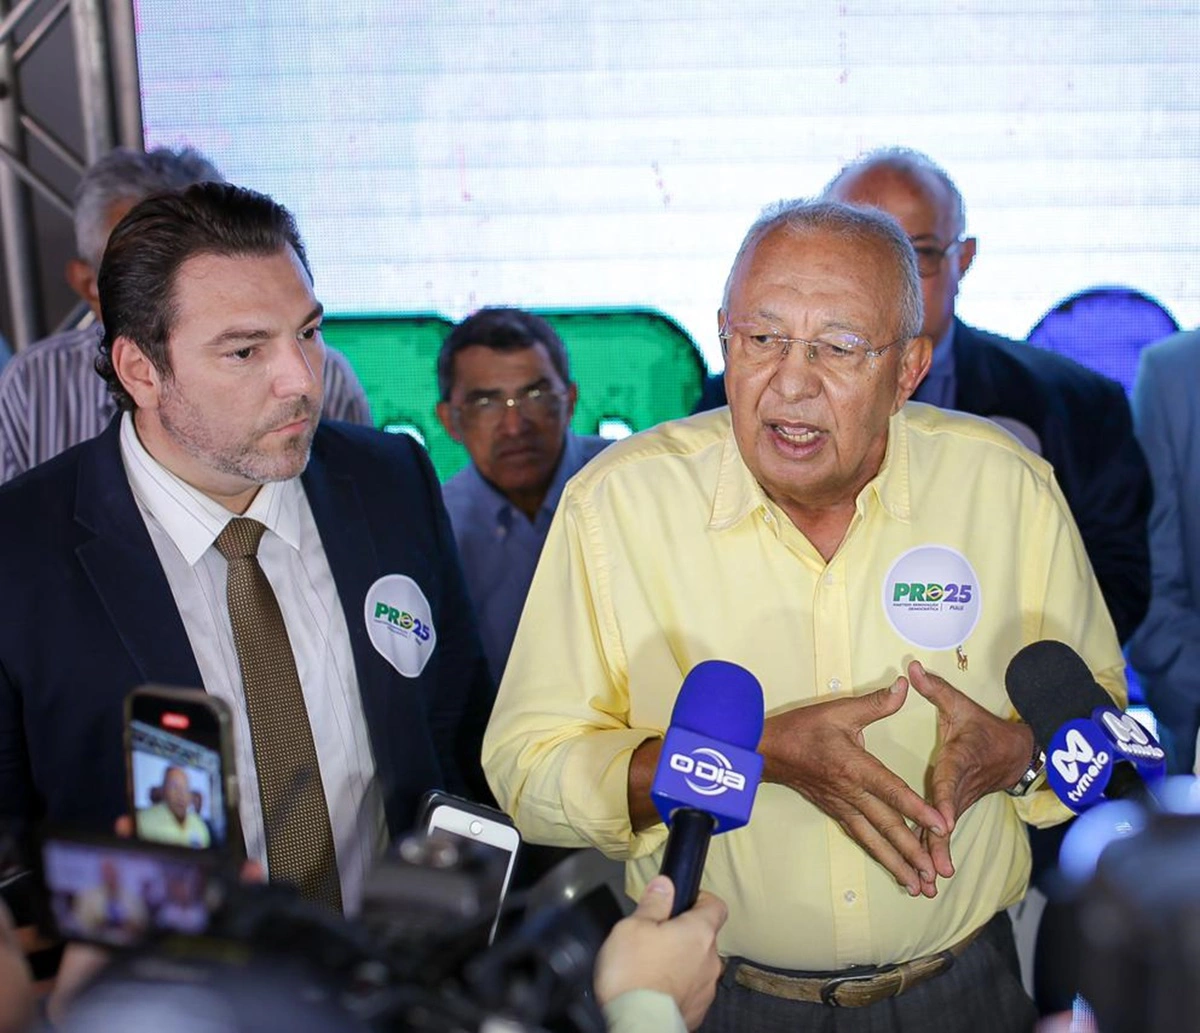 Vereador Markim Costa avalia convite para ser líder do prefeito Dr. Pessoa na Câmara Municipal de Teresina